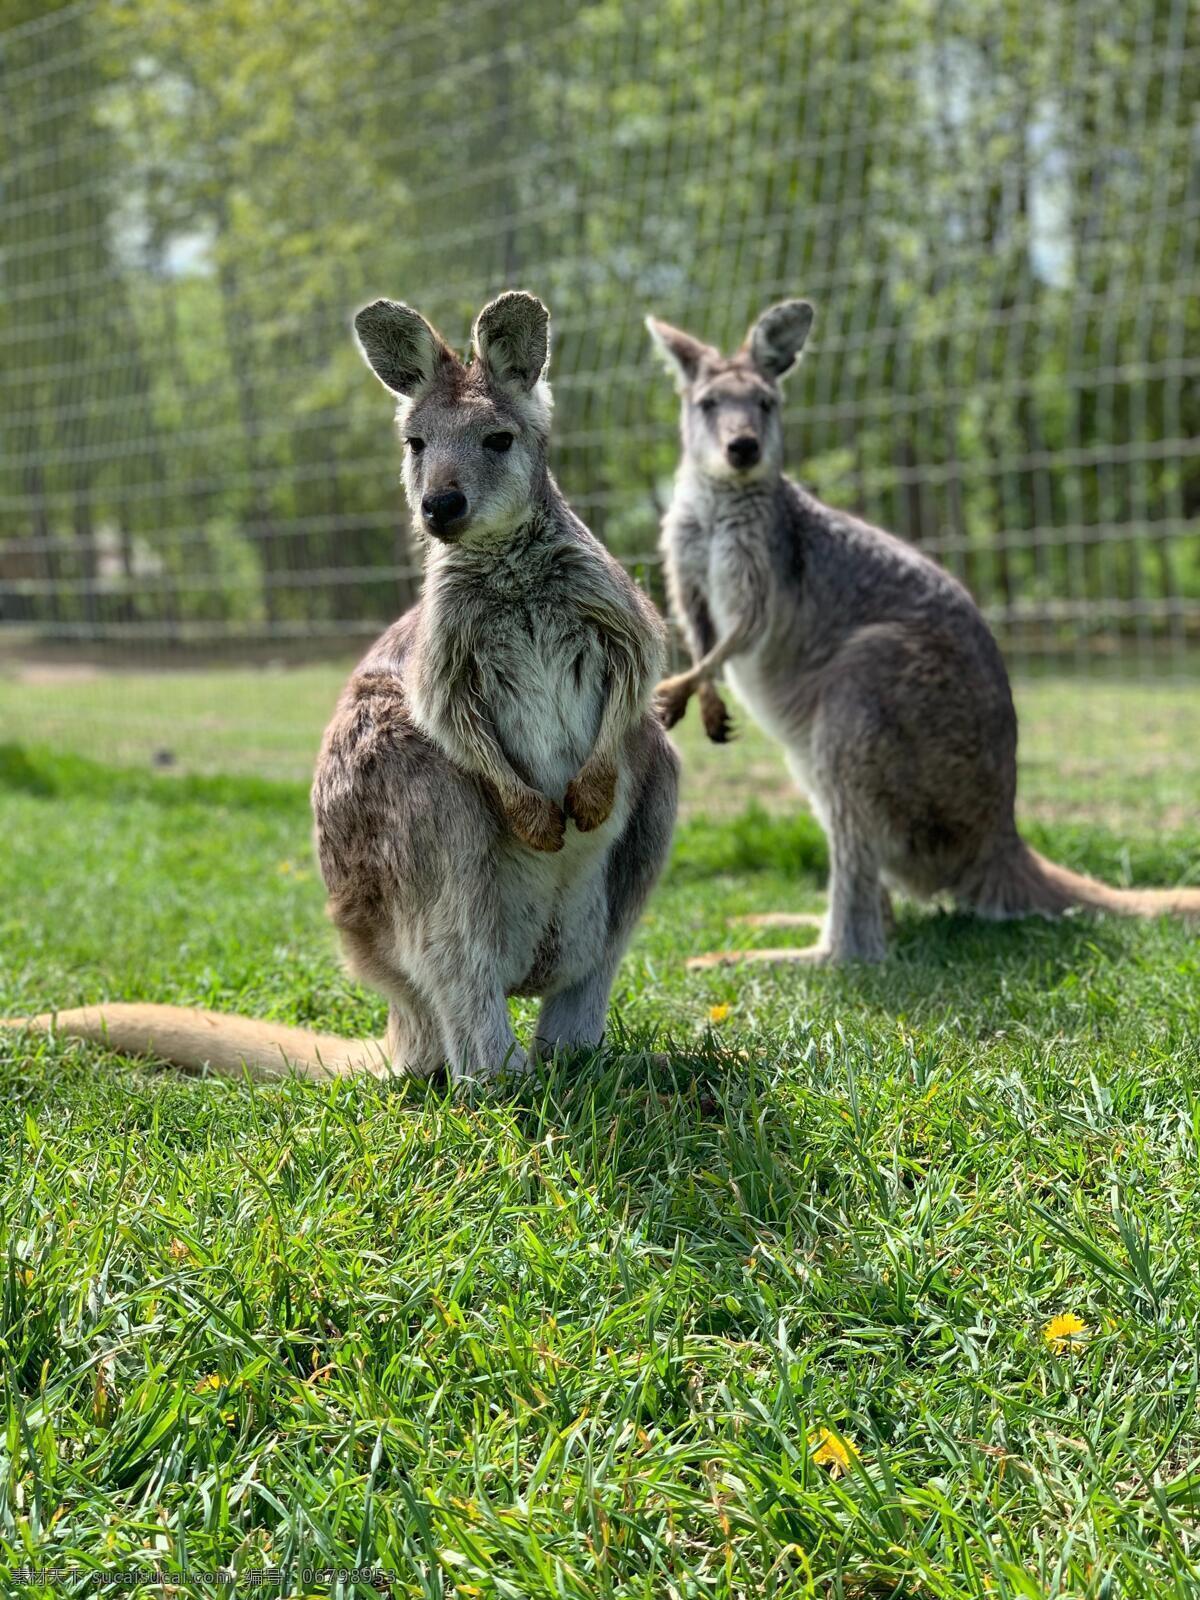 澳洲袋鼠 袋鼠 野生动物 保护动物 动物园 动物世界 澳大利亚袋鼠 草原袋鼠 生物世界